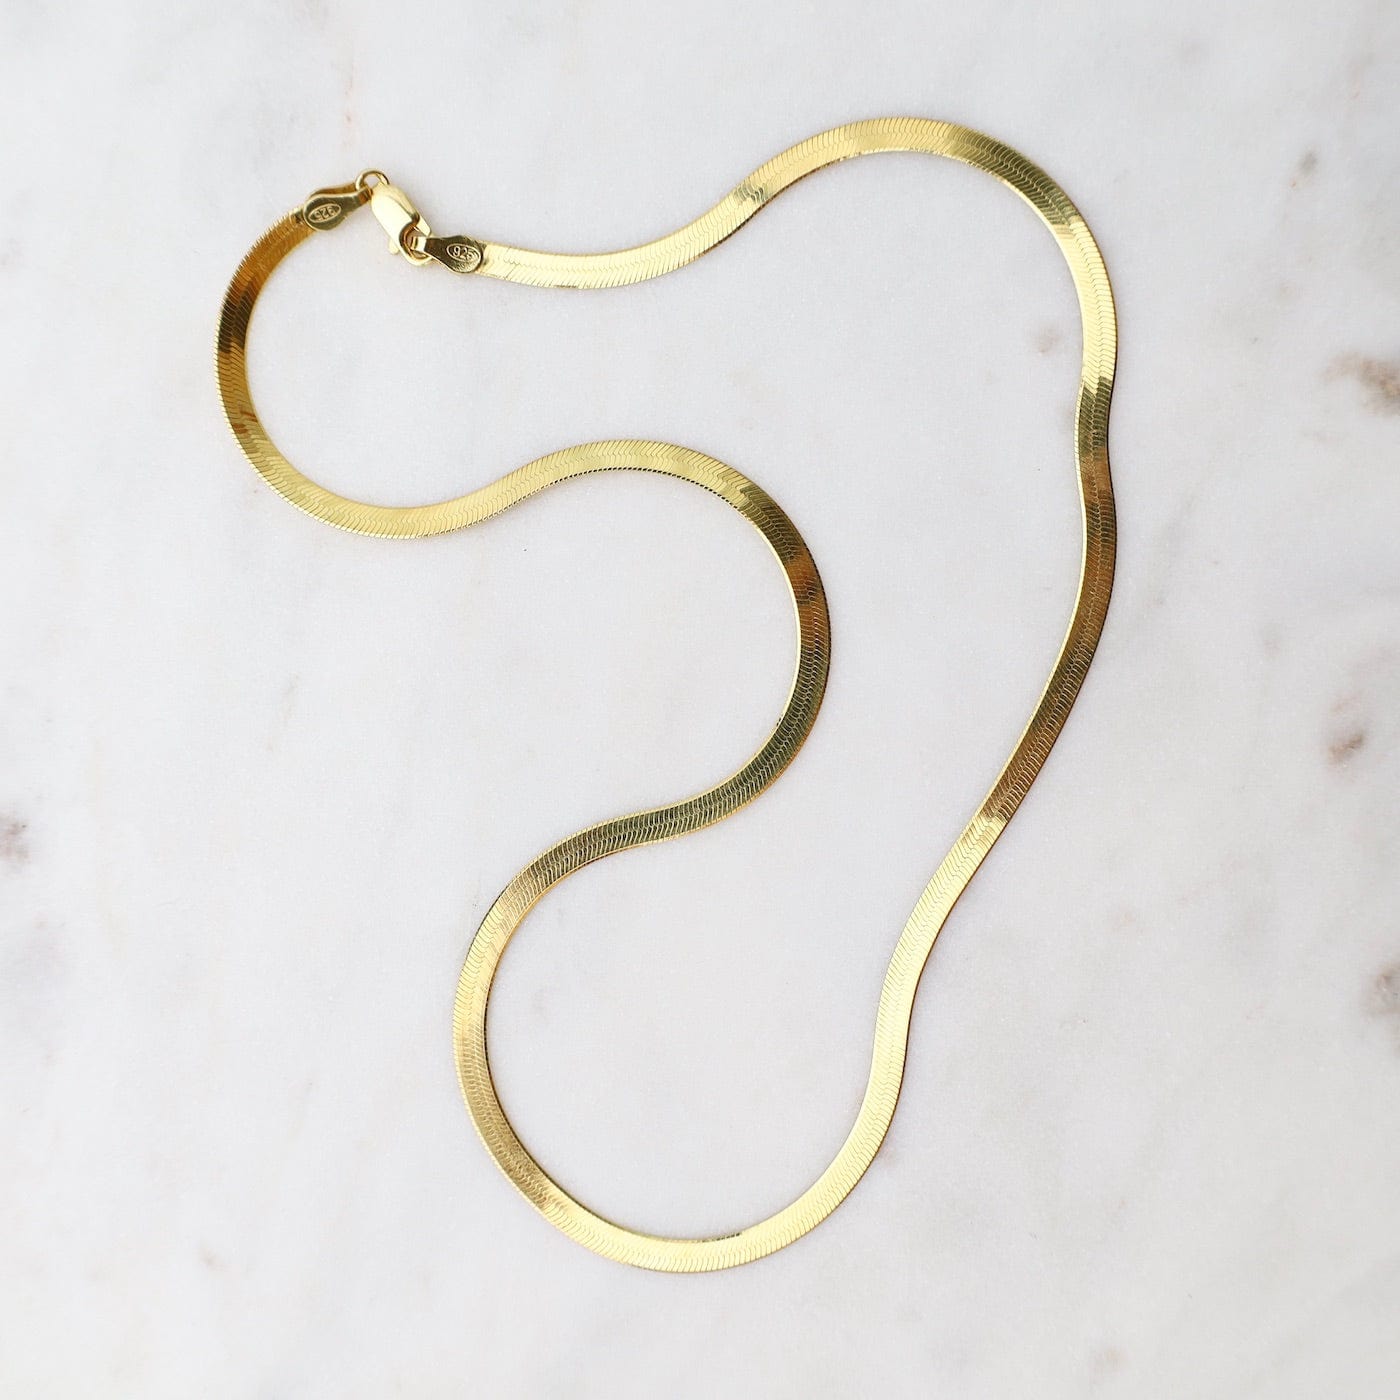 CHN-GPL 16" Gold Plated Herringbone Chain